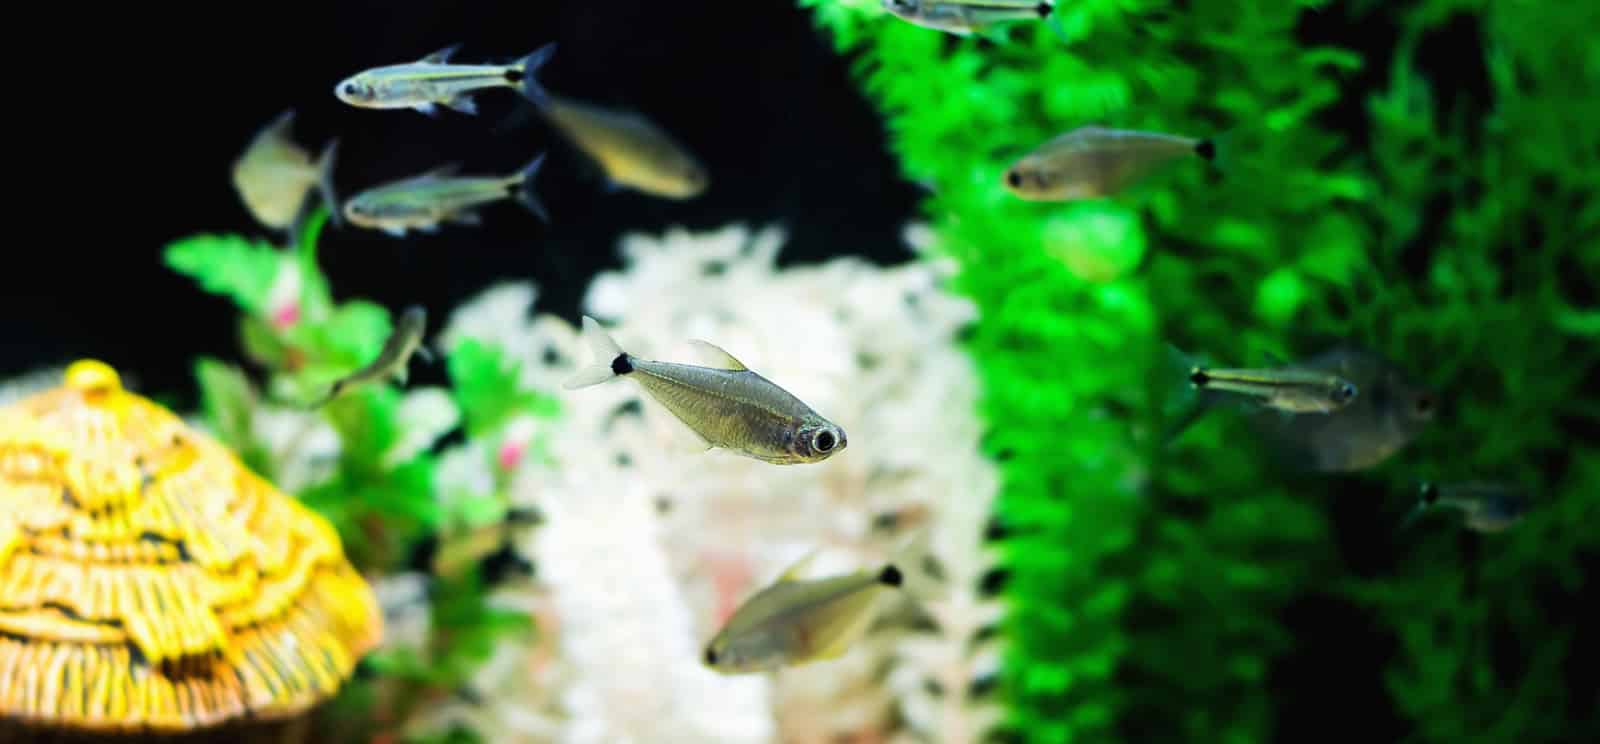 Criação de lambari em aquário